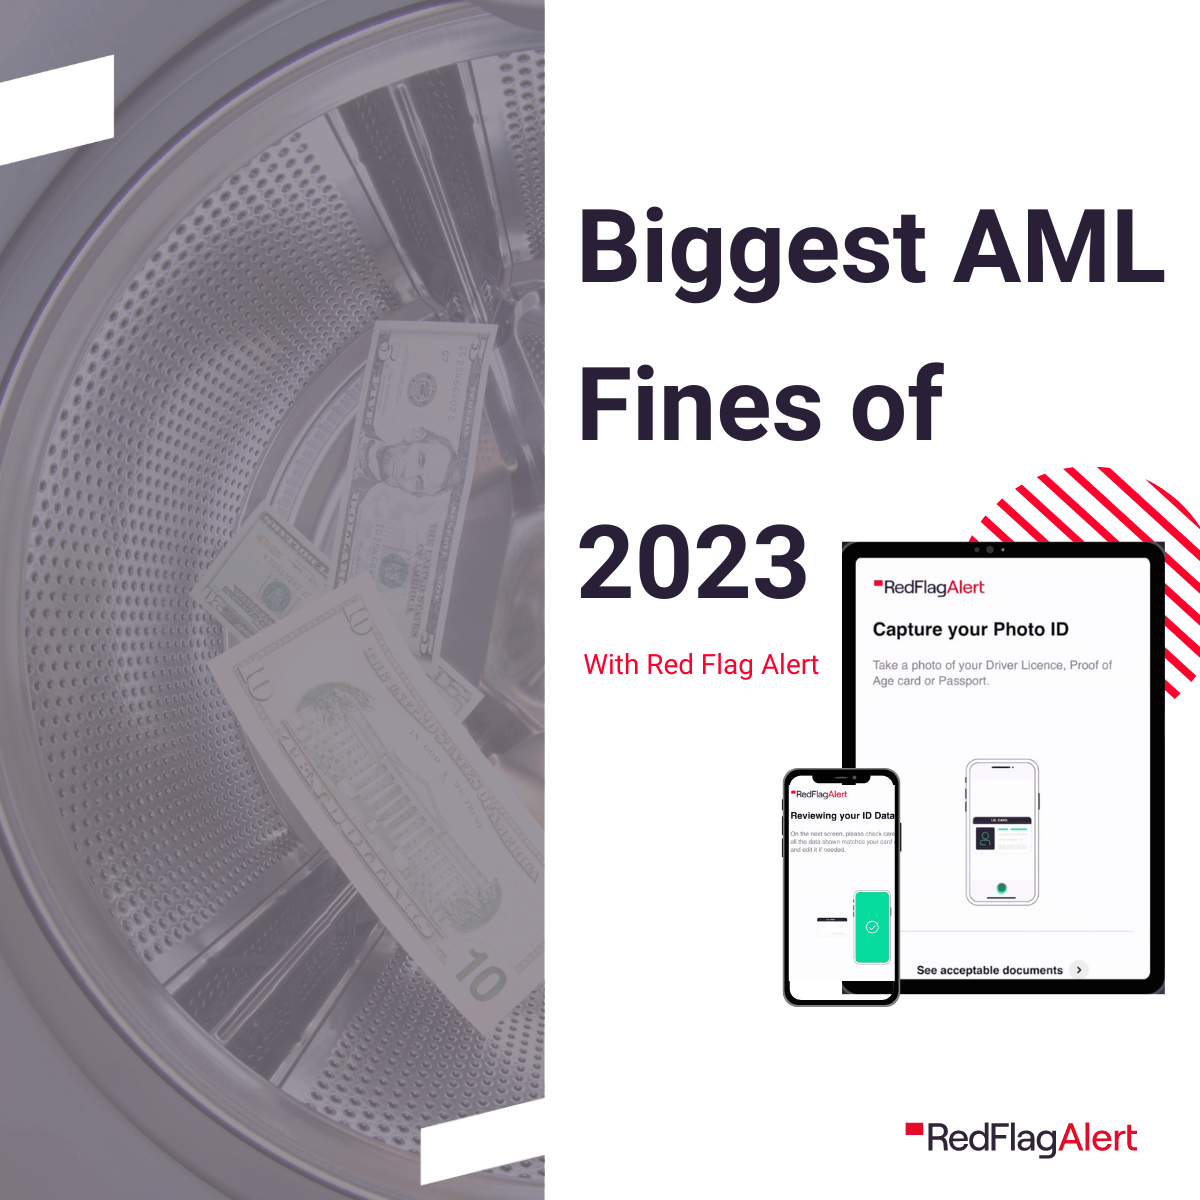 AML Fine Roundup - 8 of the Biggest Penalties in 2023